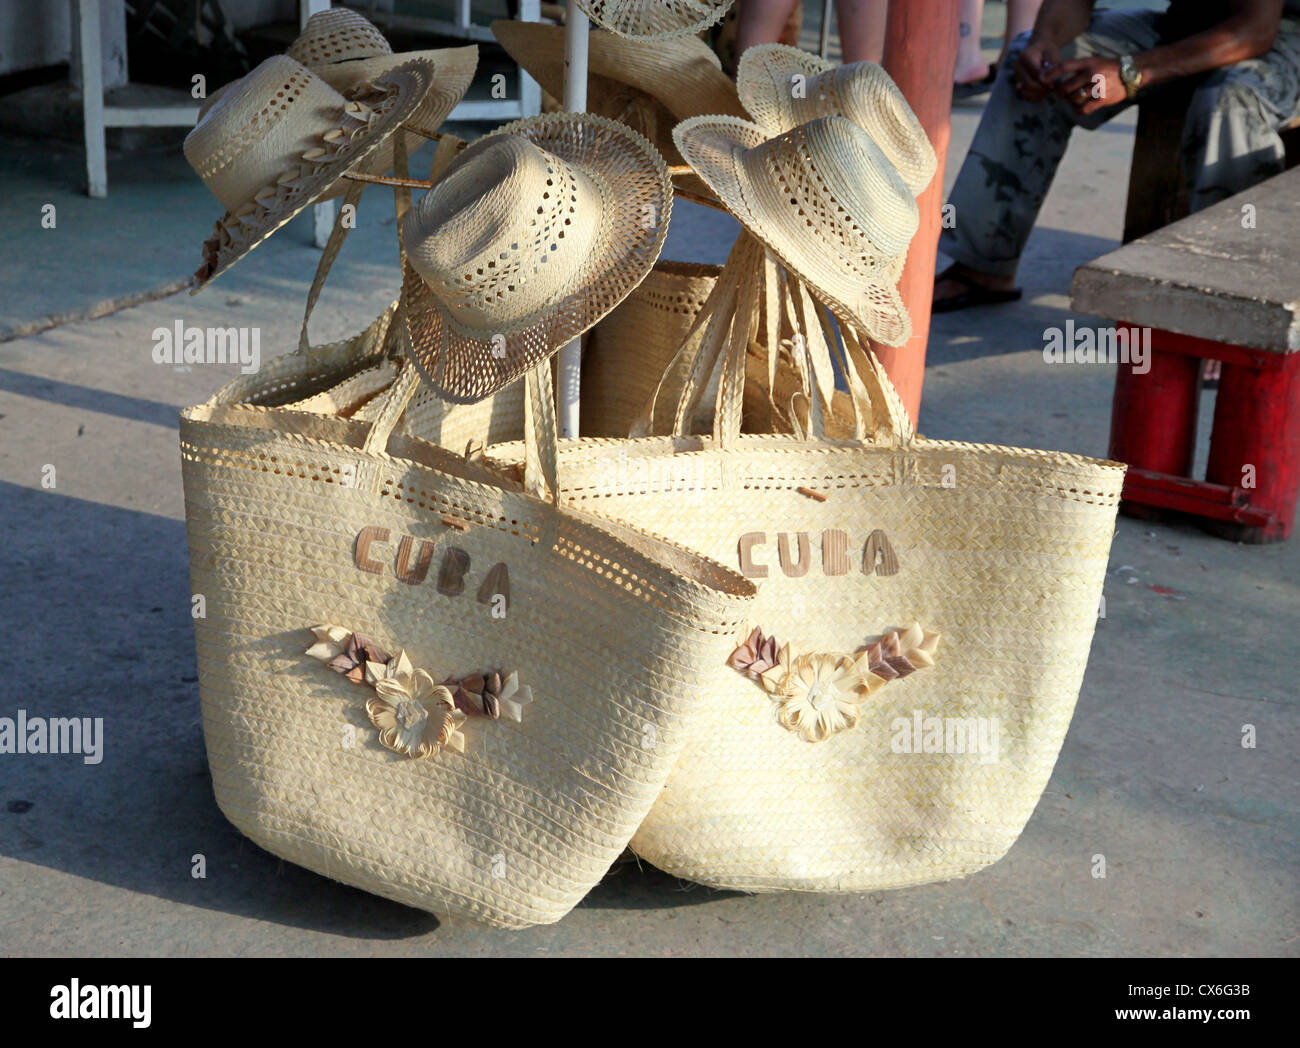 Cuba Souvenir Bags Stock Photo